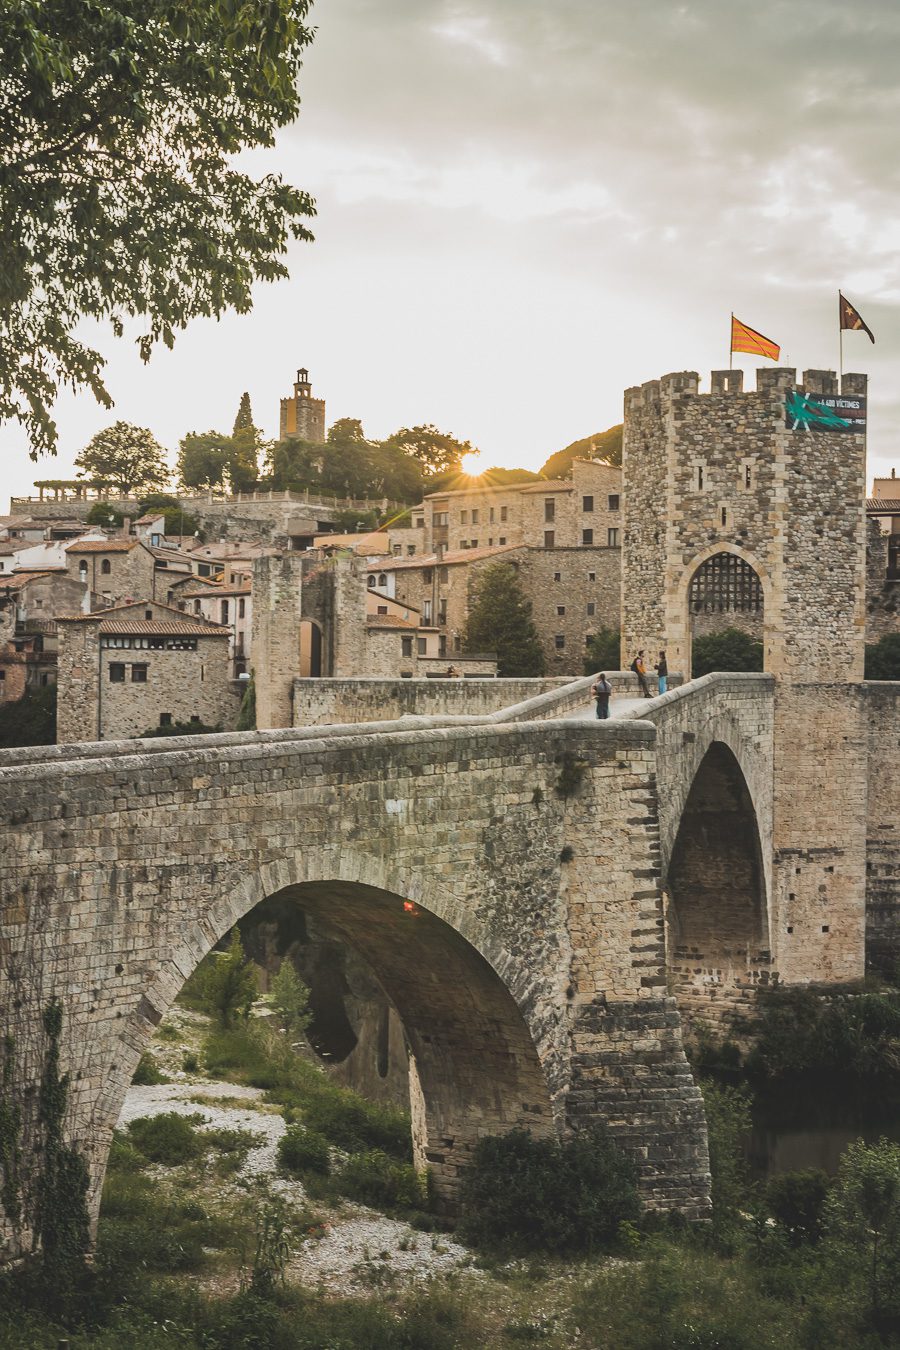 Découvrez le charme pittoresque de Besalú, l'un des plus beaux villages d'Espagne. Niché au cœur de la Catalogne, ce joyau médiéval offre un paysage enchanteur et une ambiance authentique. Partez en road trip à travers l'Espagne et explorez les trésors cachés de la région. Besalu vous séduira par son architecture unique, ses ruelles pavées et ses monuments historiques.